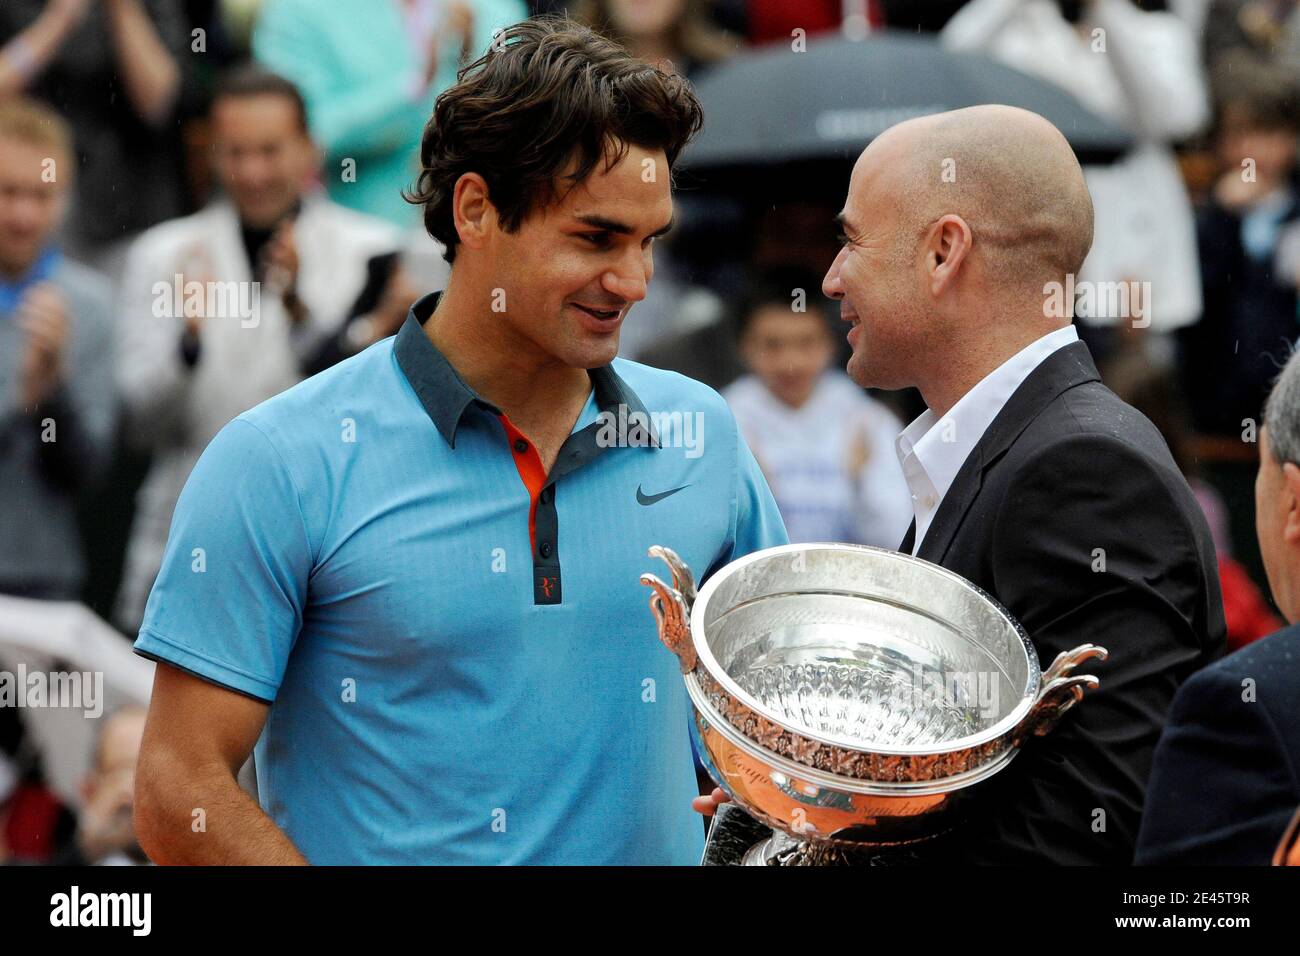 Der Schweizer Roger Federer erhält die Trophäe von dem ehemaligen  US-Tennisspieler Andre Agassi nach seinem Sieg im Einzel-Endspiel der  Herren beim French Open Tennisturnier im Roland Garros Stadion in Paris am  Sonntag,